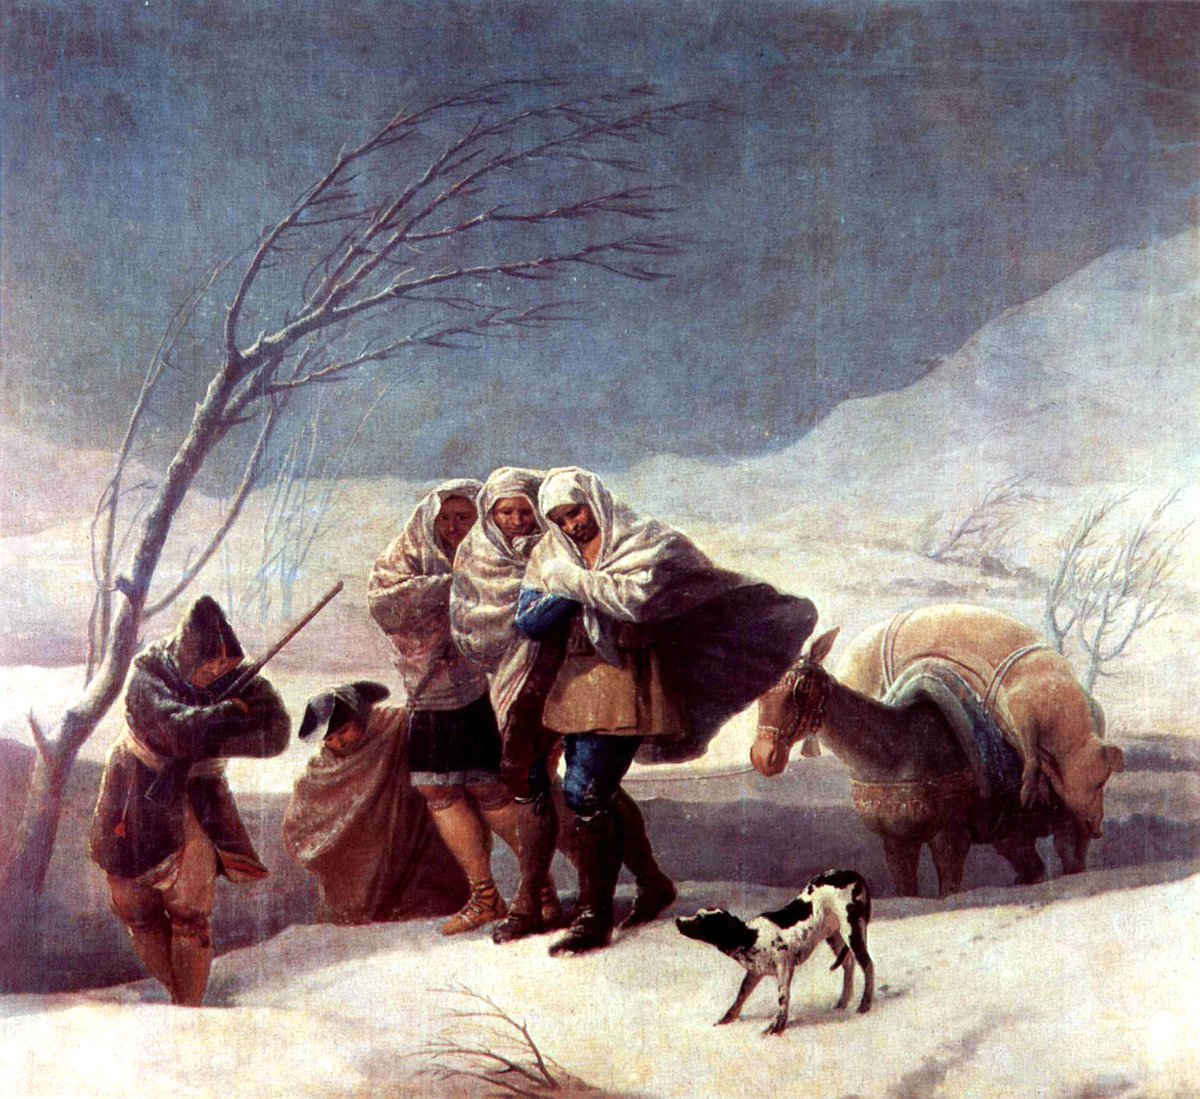 RT @artistgoya: The Snowstorm (Winter), 1787 #franciscogoya #goya https://t.co/OqNTnZCA1V https://t.co/JvPJDPH5Nh